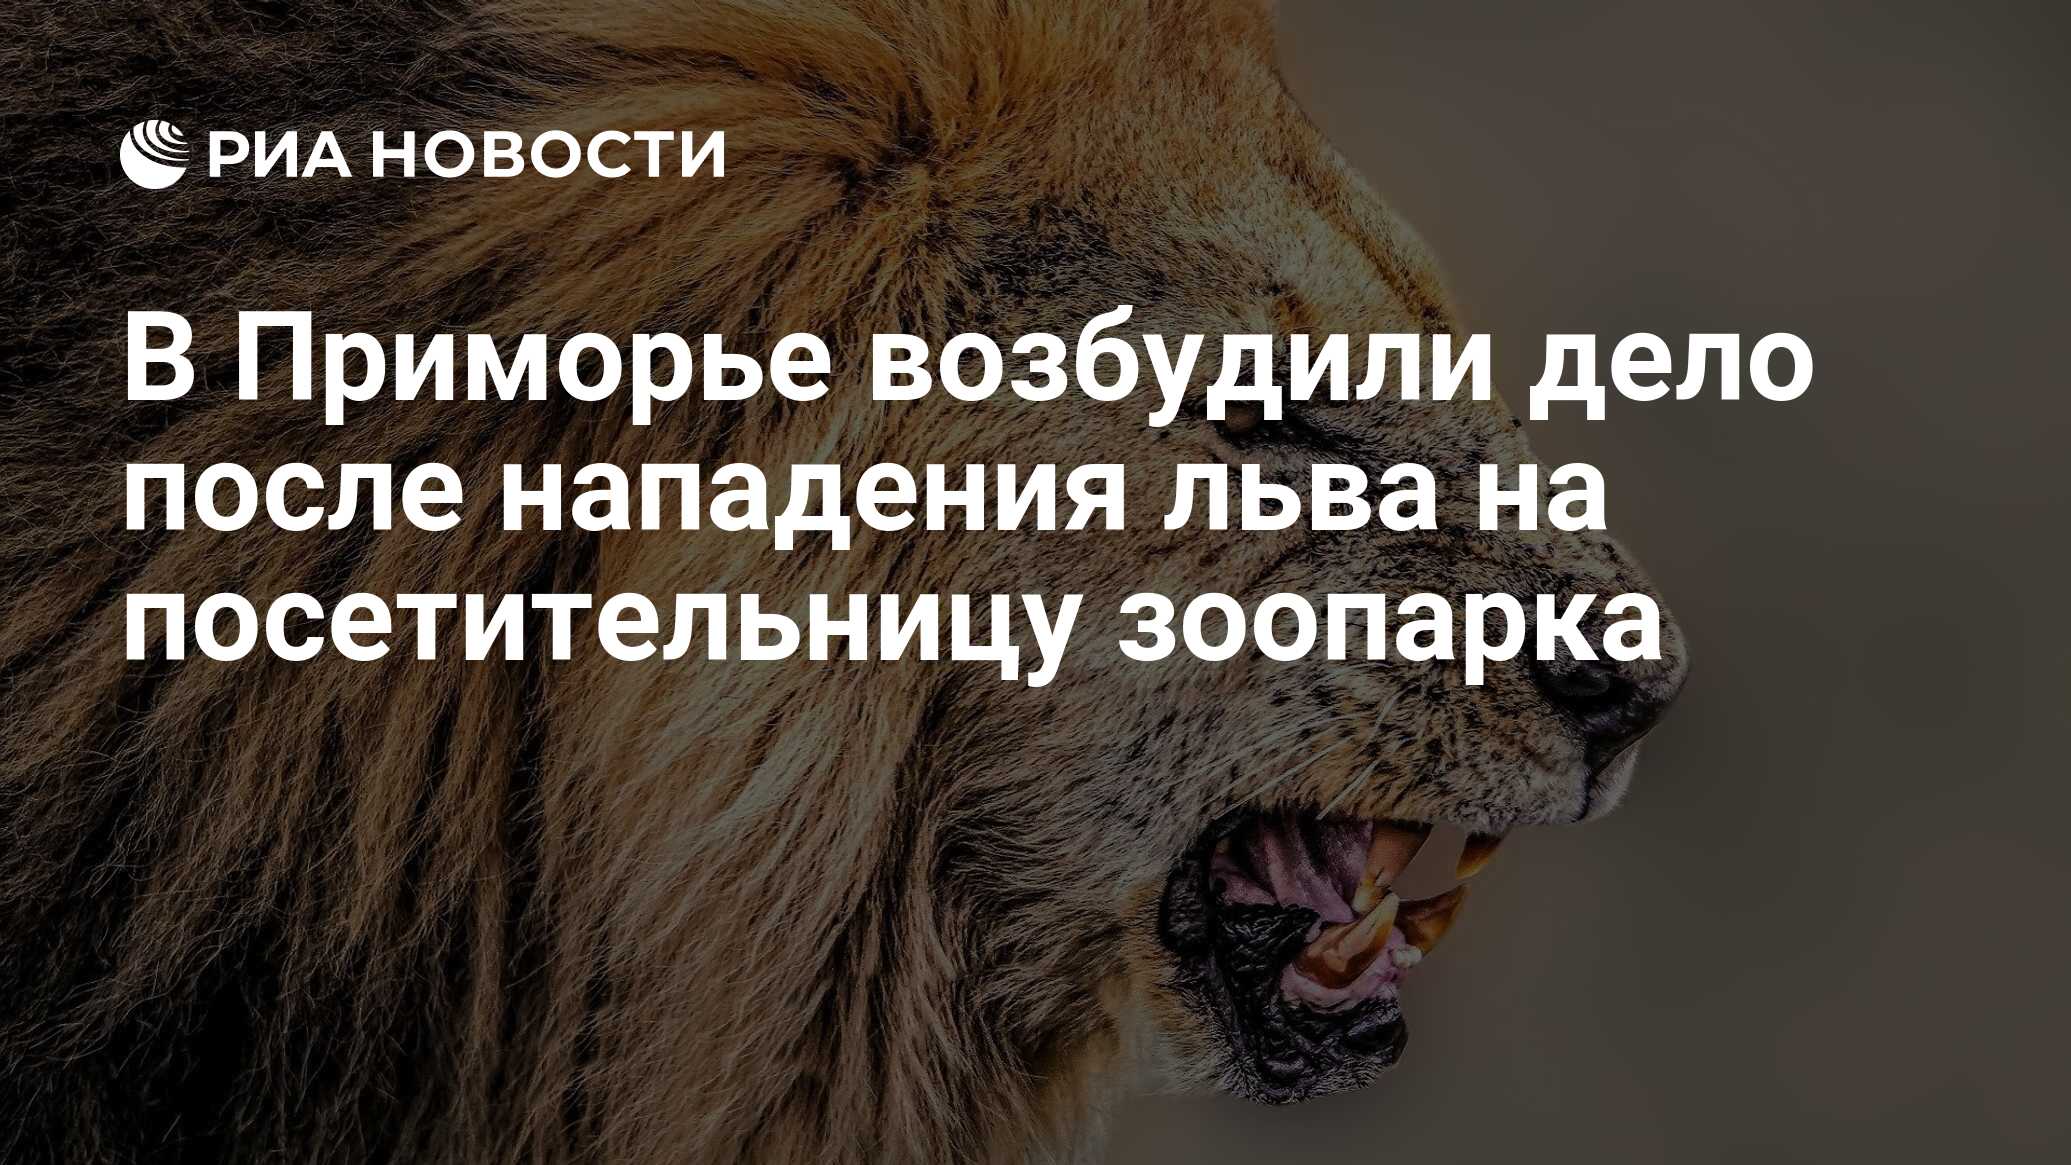 Котенок нападает на Льва. Лев на первом месте. Лев в Московском зоопарке ограда. В Приморье в зоопарке Лев напал на женщину.